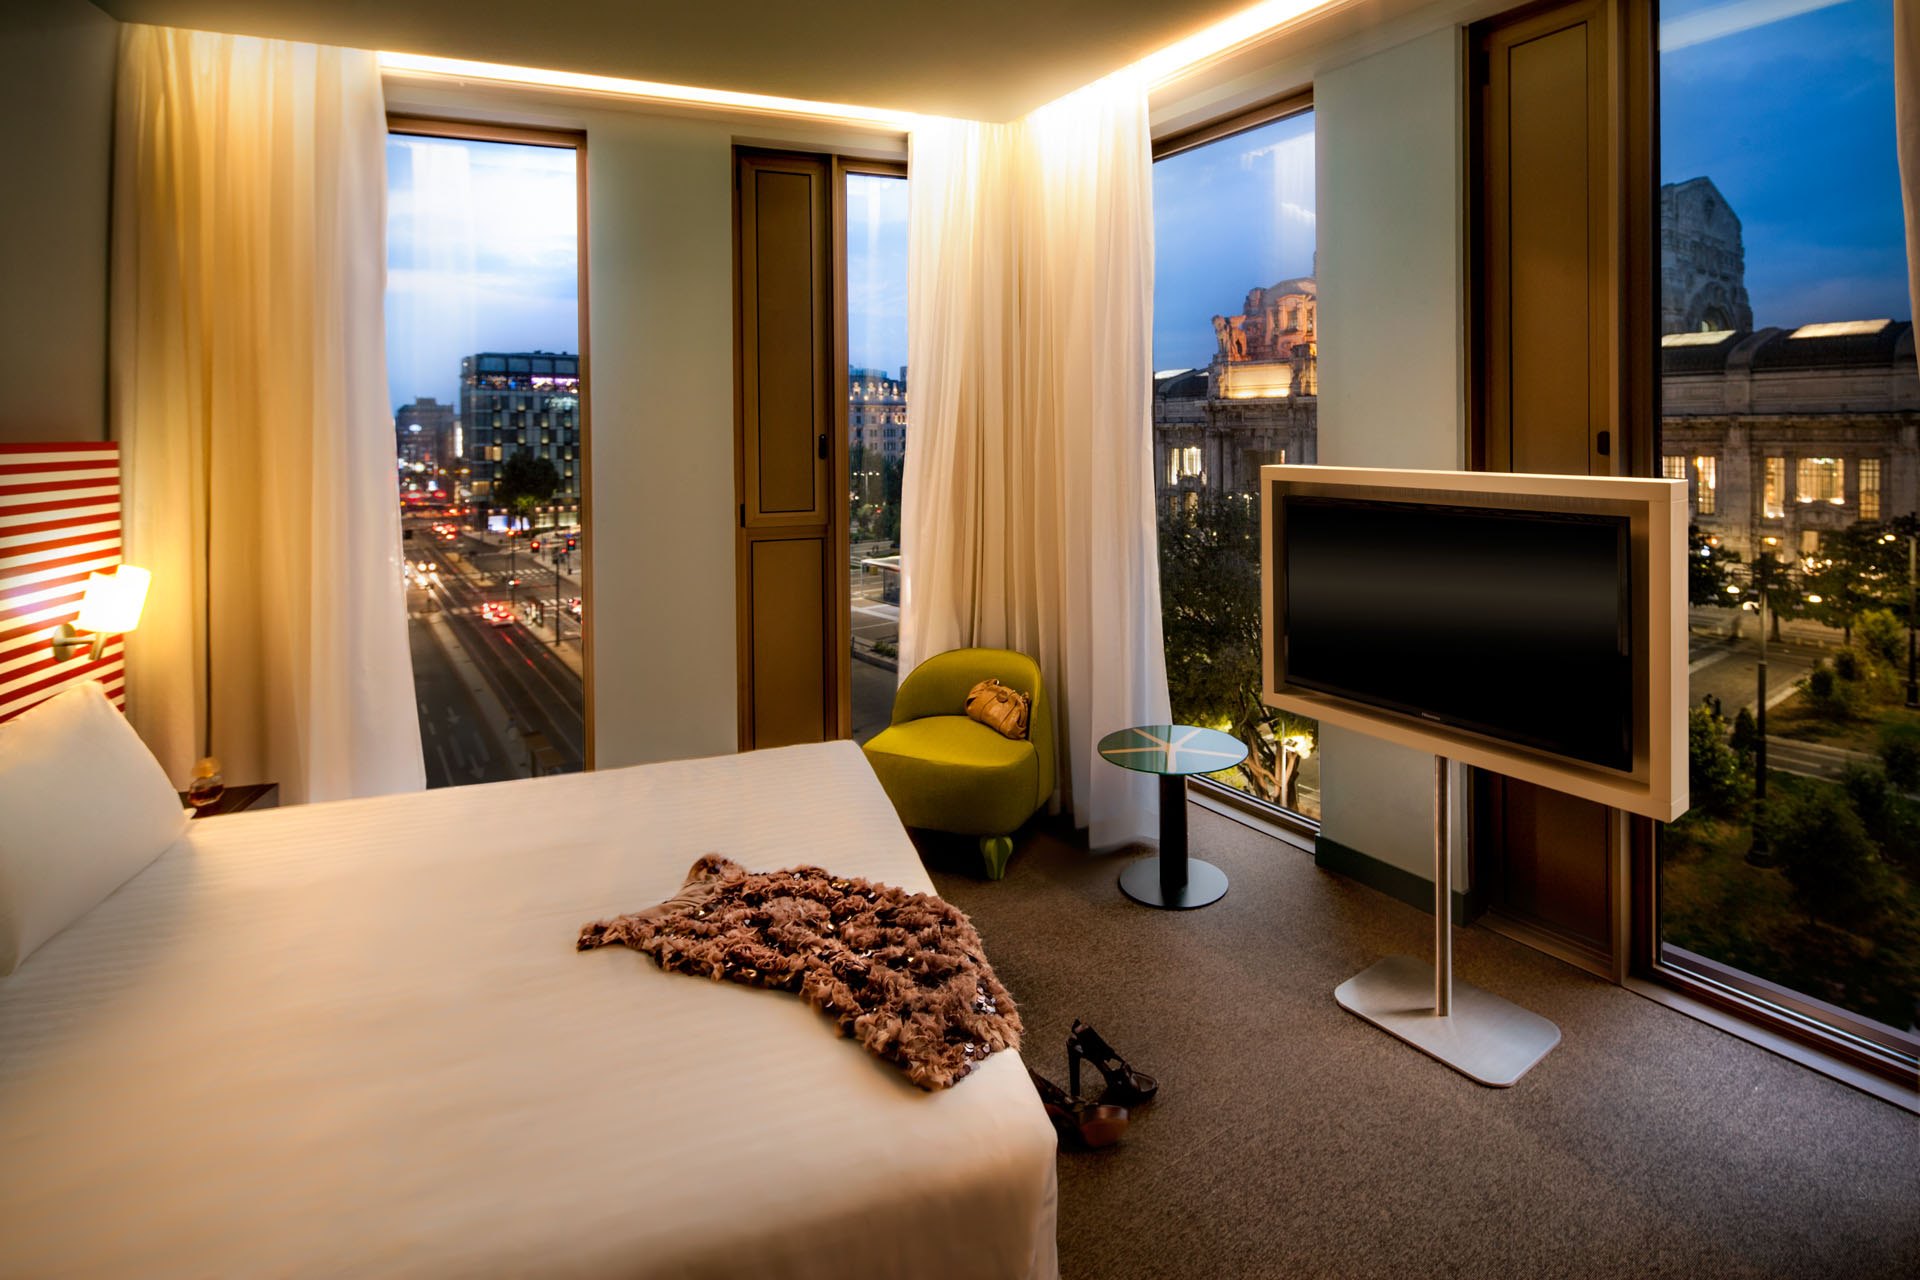 luci camera da letto progetto contract hotel glam Milano stazione centrale quattro stelle lusso arredi realizzati dal gruppo rodi 